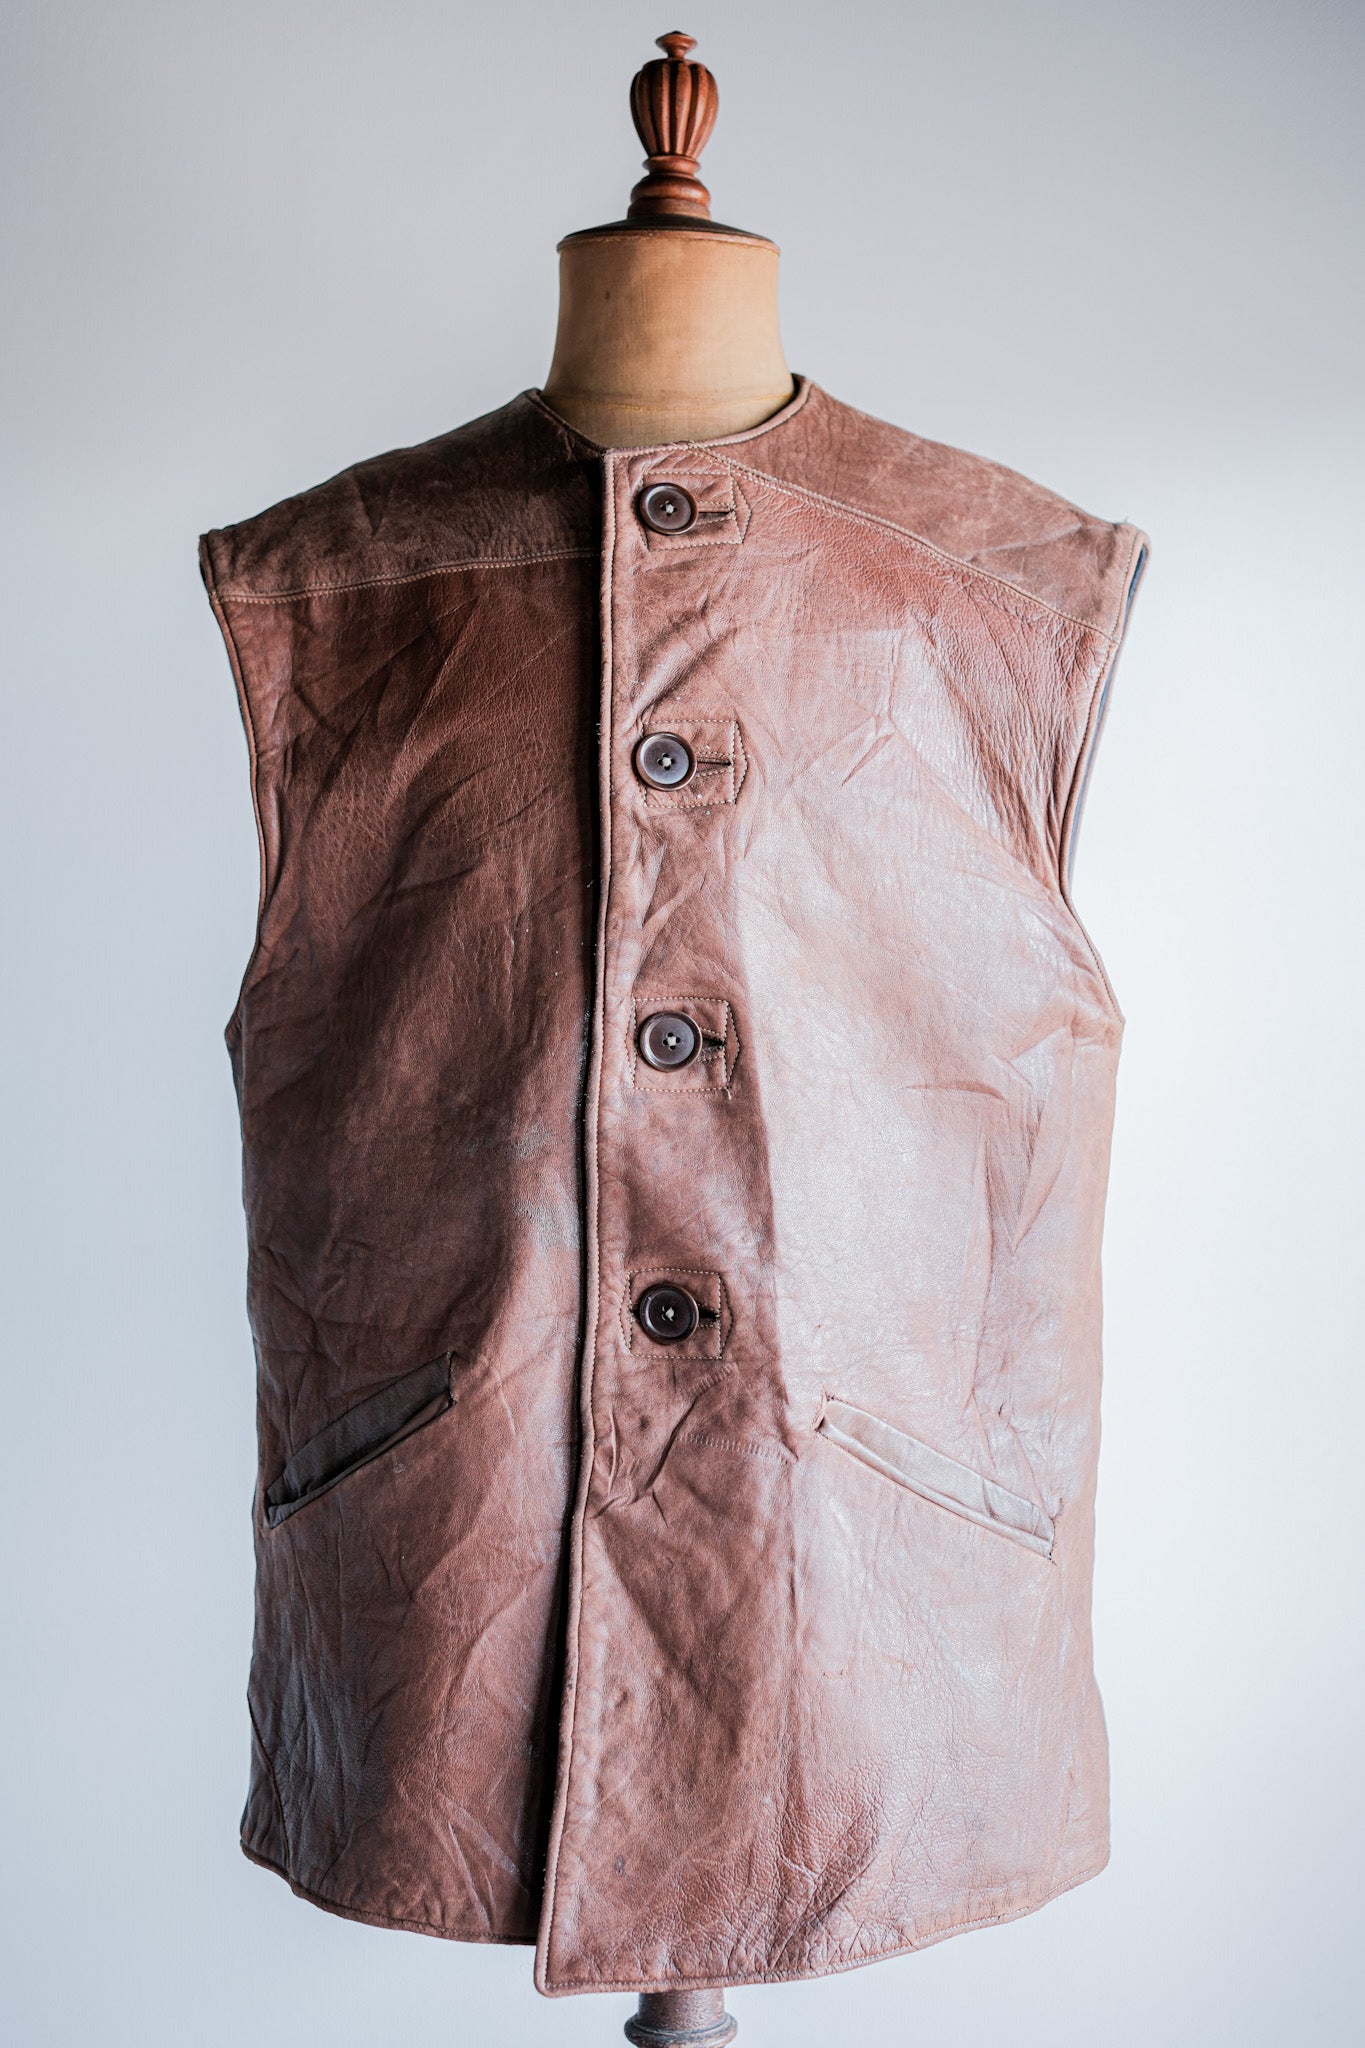 【~40's】WWⅡ British Army Jerkin Leather Vest Size.2 "Modified"